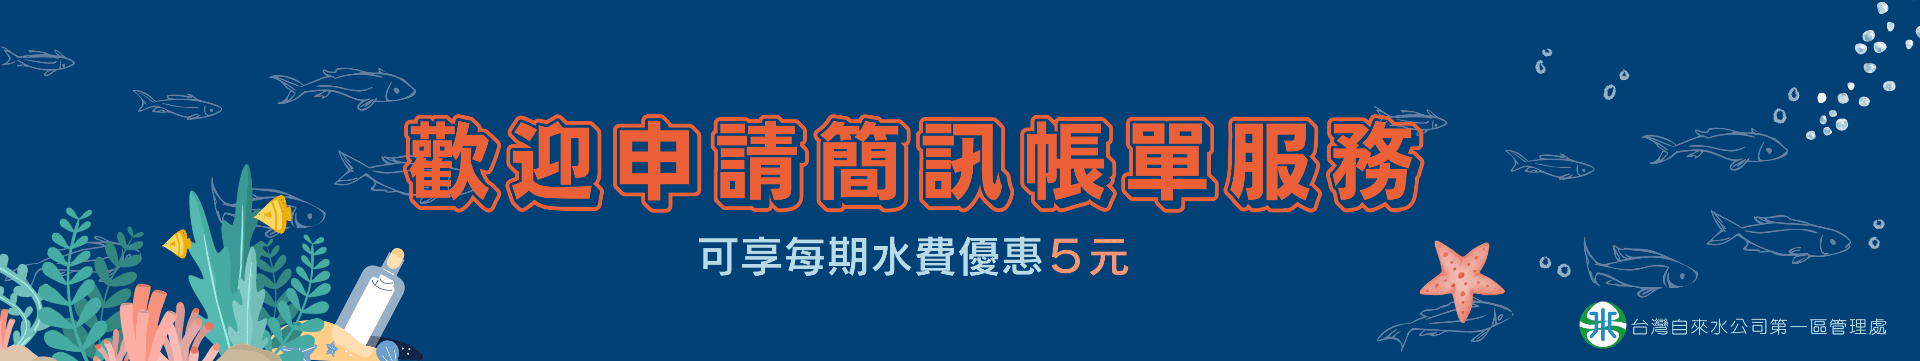 區處網站banner (簡訊帳單).png